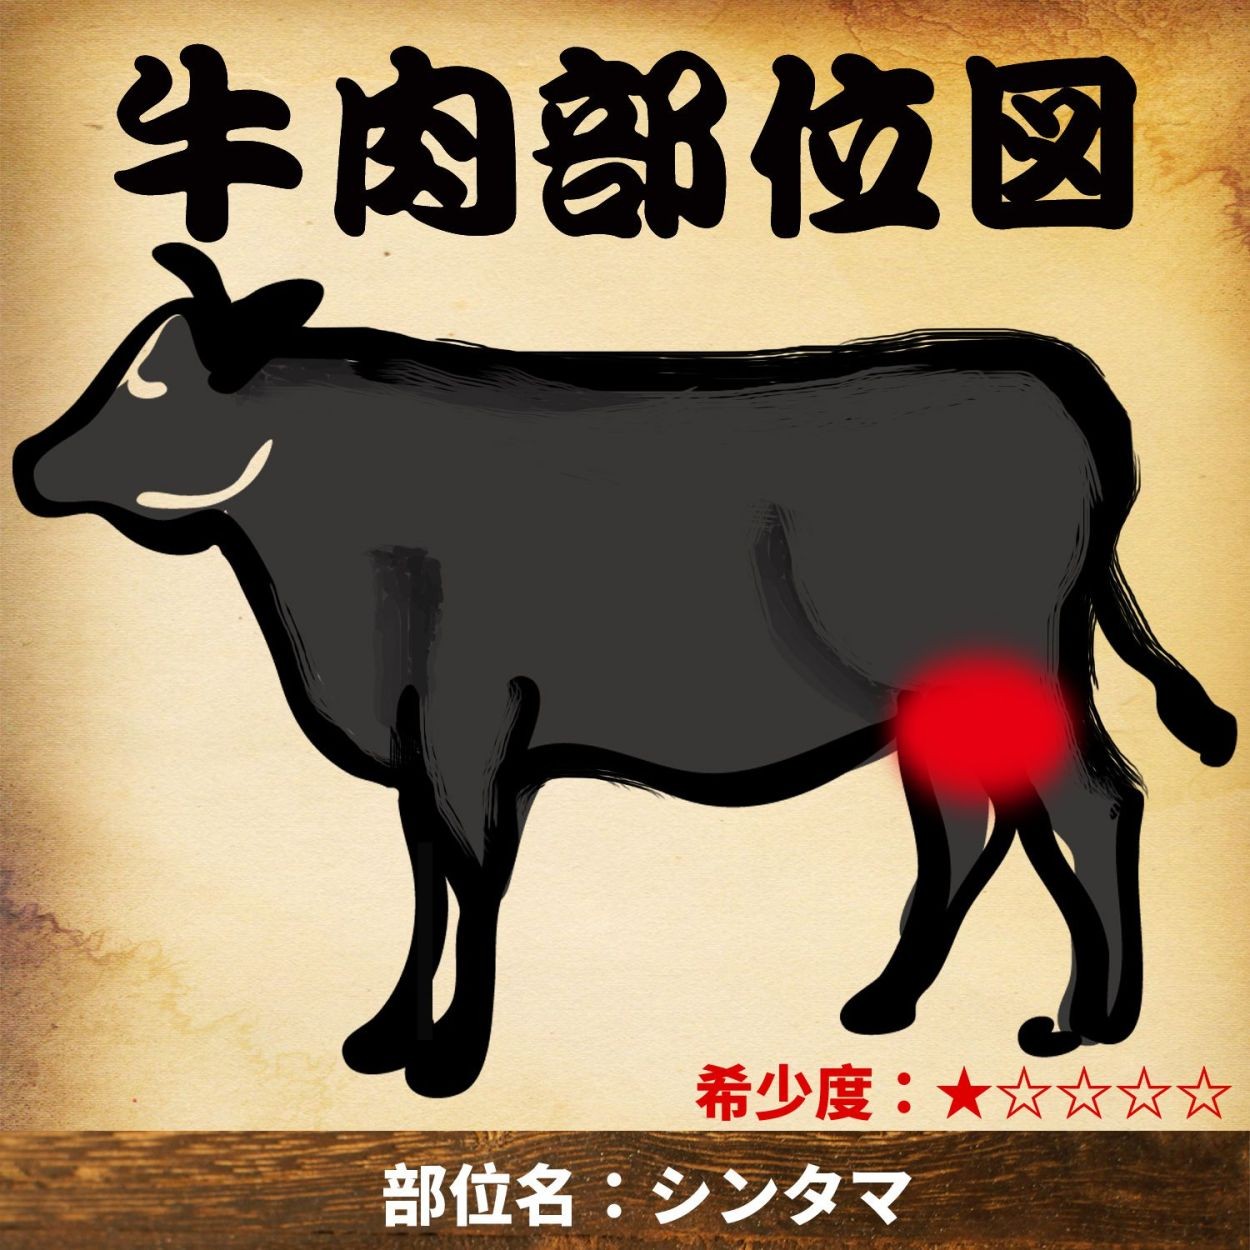 黒毛和牛 シンタマ 約10kg A5ランク 5等級 牛モモ肉 牛もも肉 国産牛 ブロック 業務用 贈答品 ギフト ブランド牛